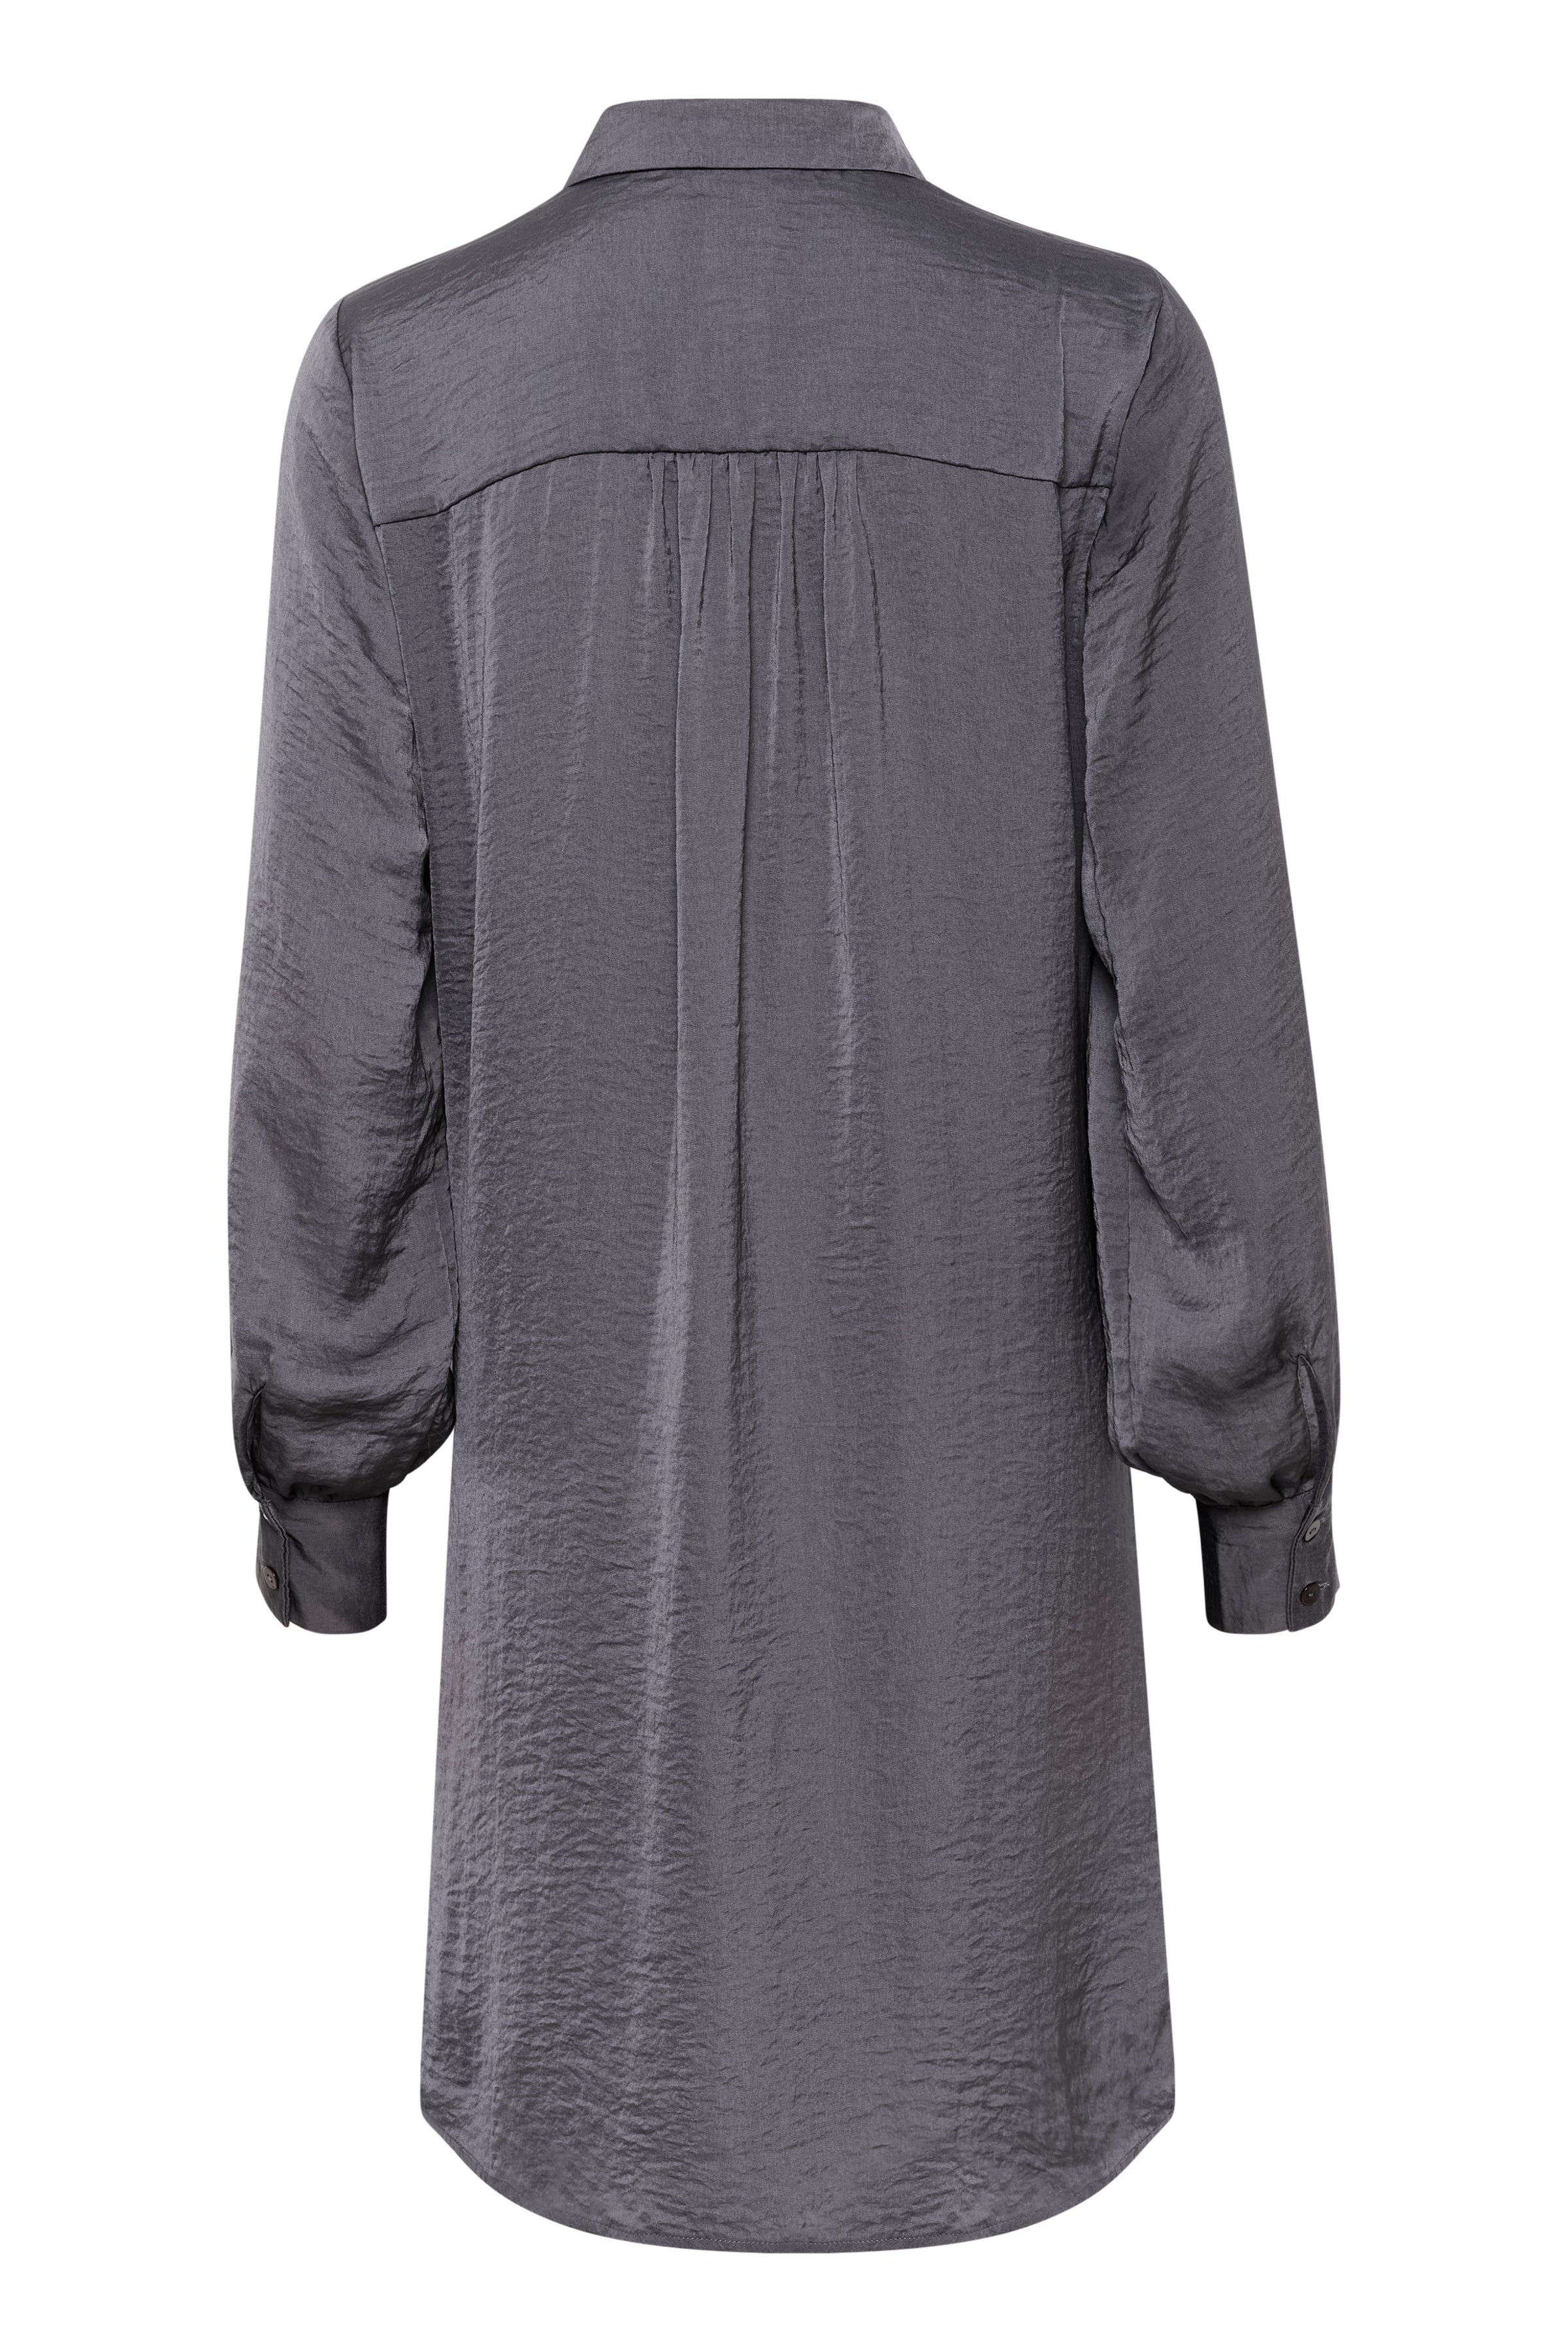 My Essential Wardrobe AlbaMW Dress, Grey